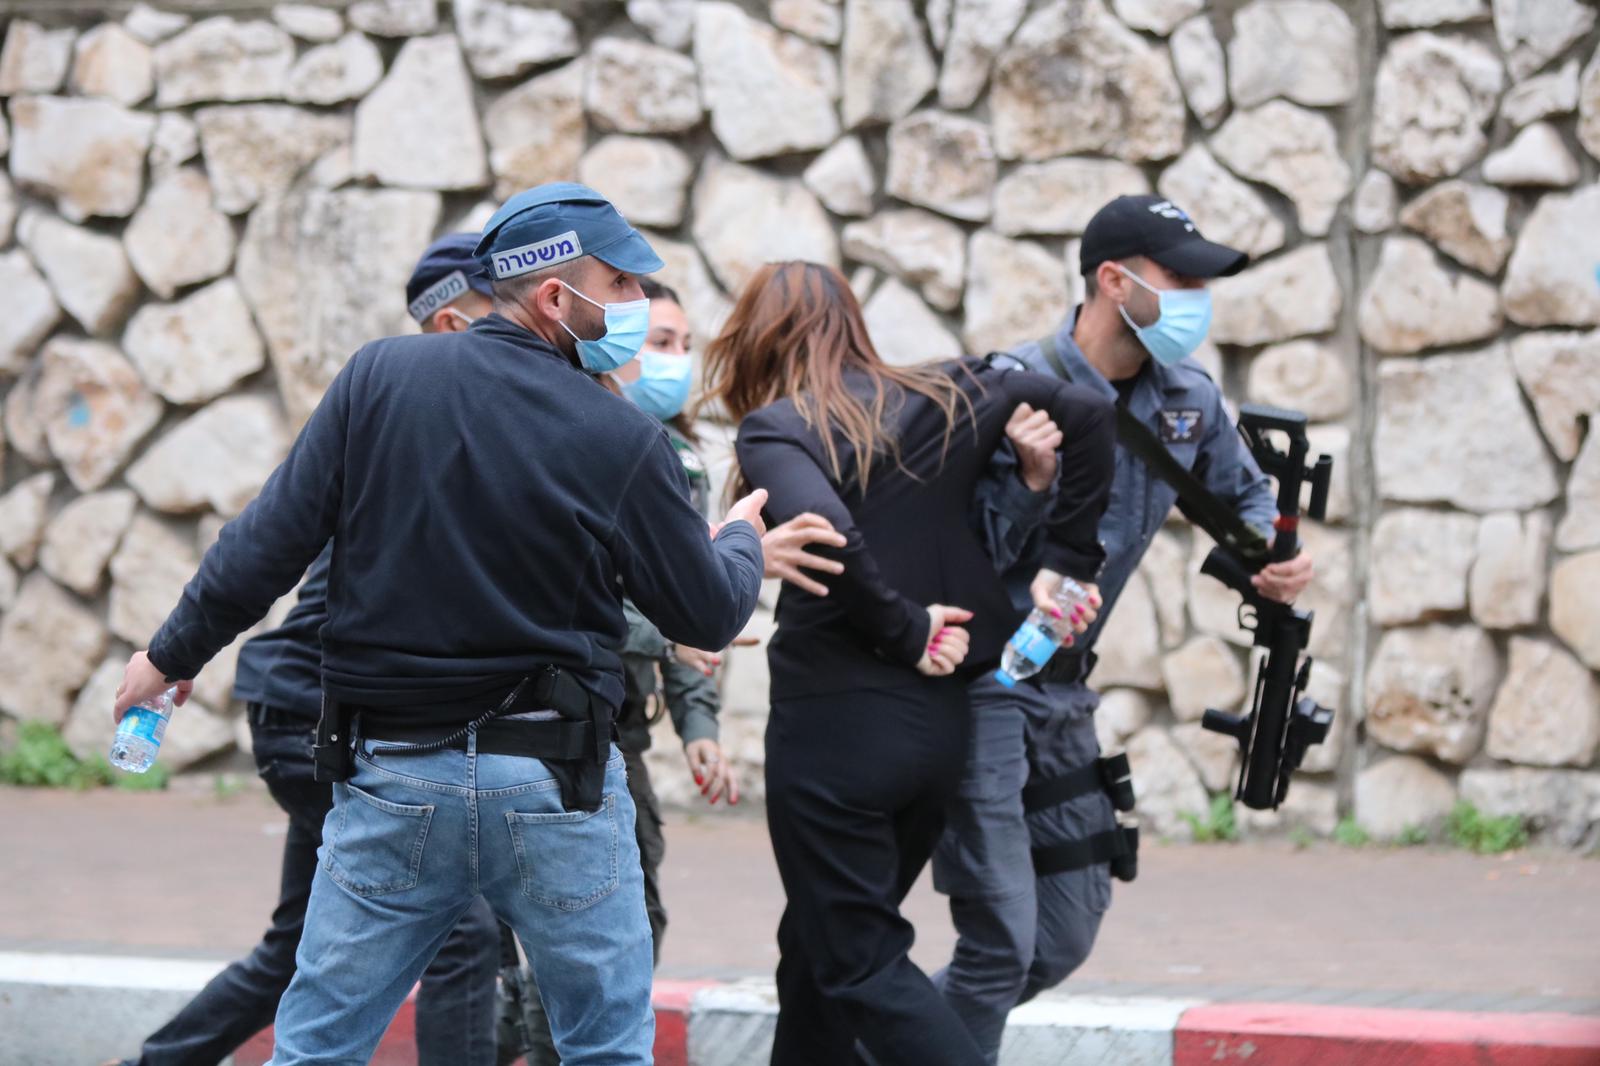 تقديم 11 فلسطينيا من الداخل المحتل للمحاكمة احتجوا ضد زيارة نتنياهو

